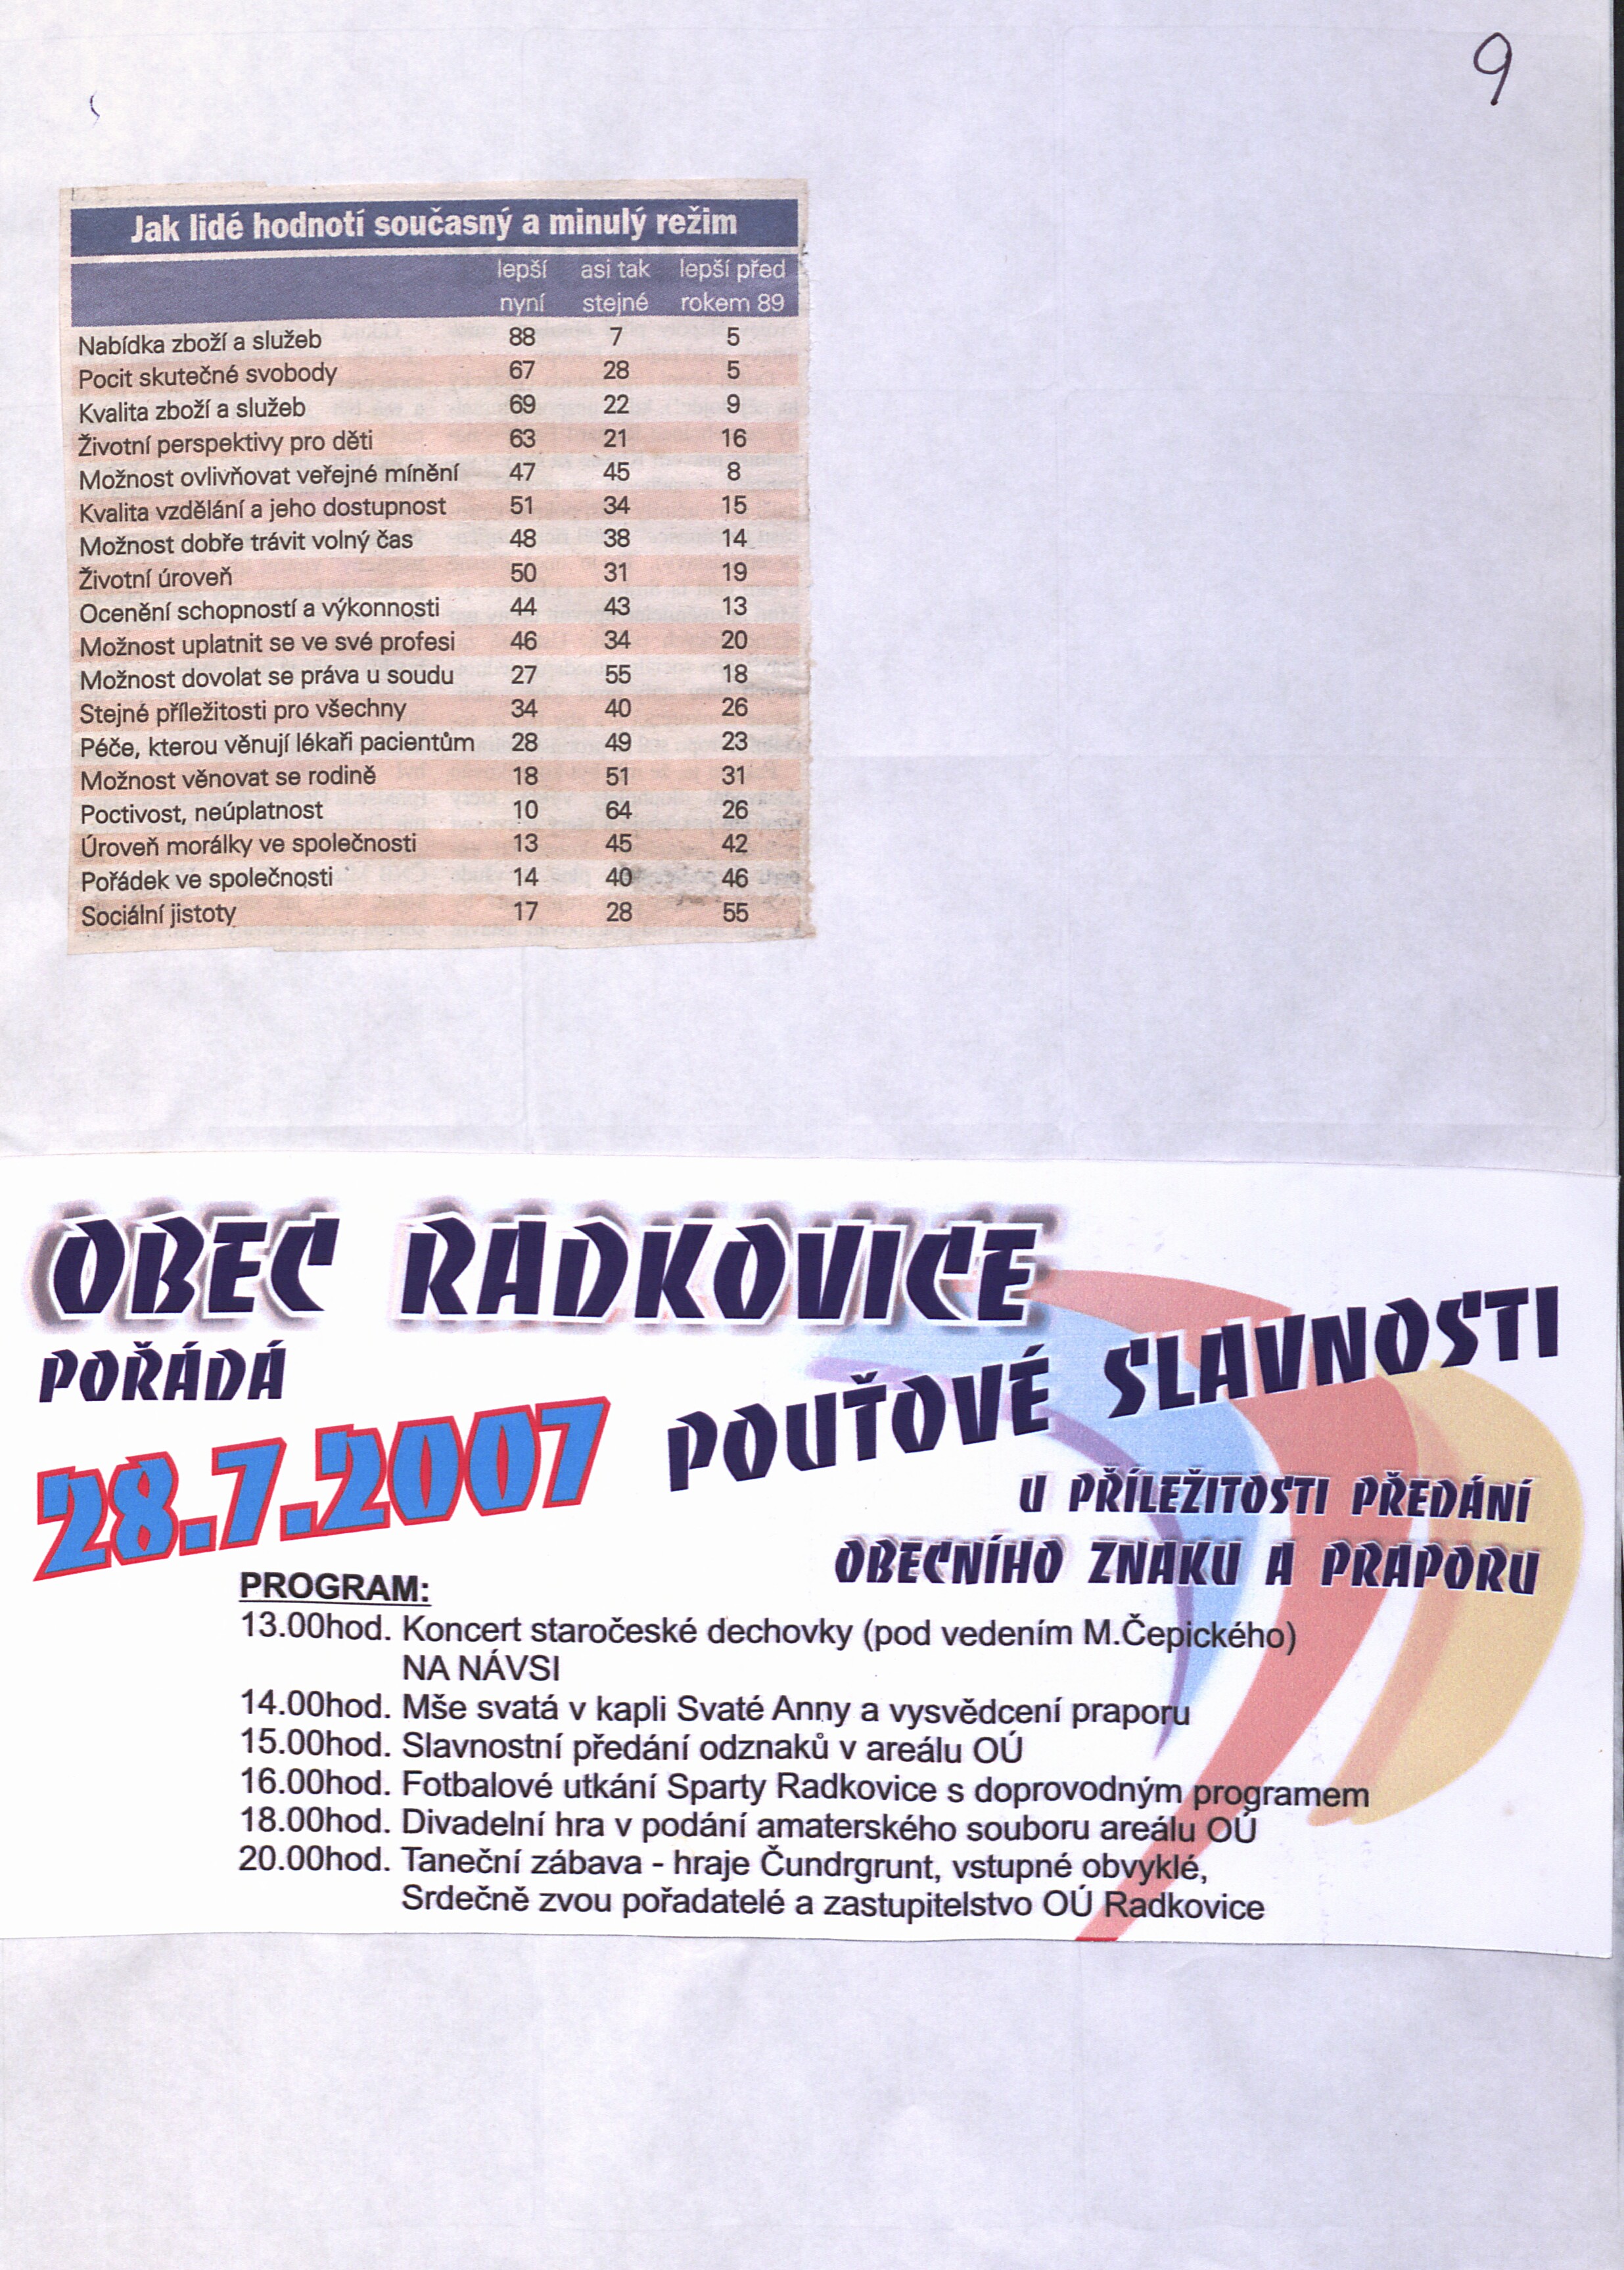 76. soap-pj_01038_obec-radkovice-prilohy-2001-2007_0770